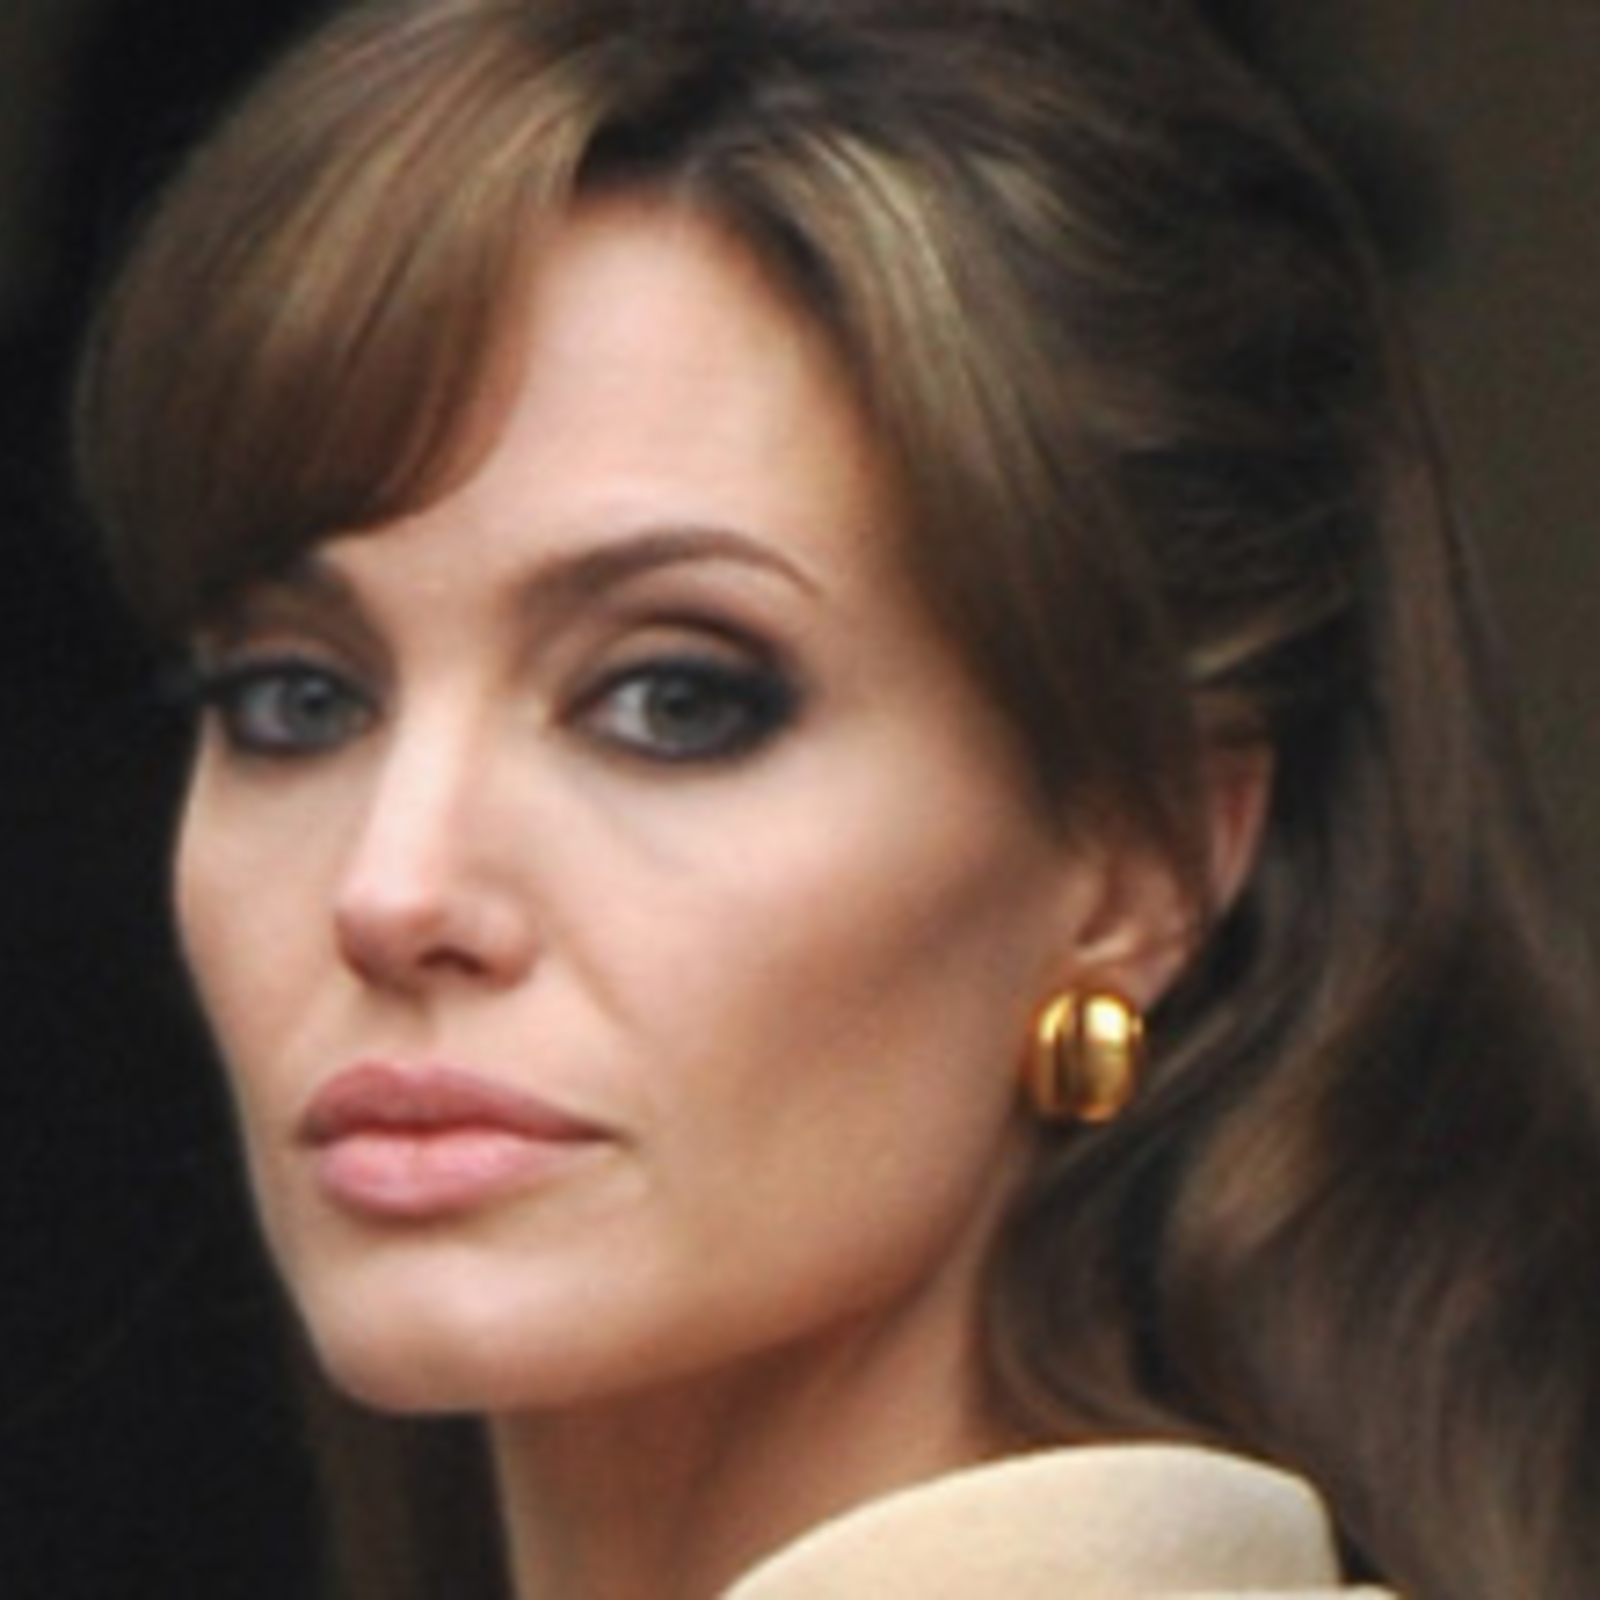 Wie oft gibt es den Namen Jolie?